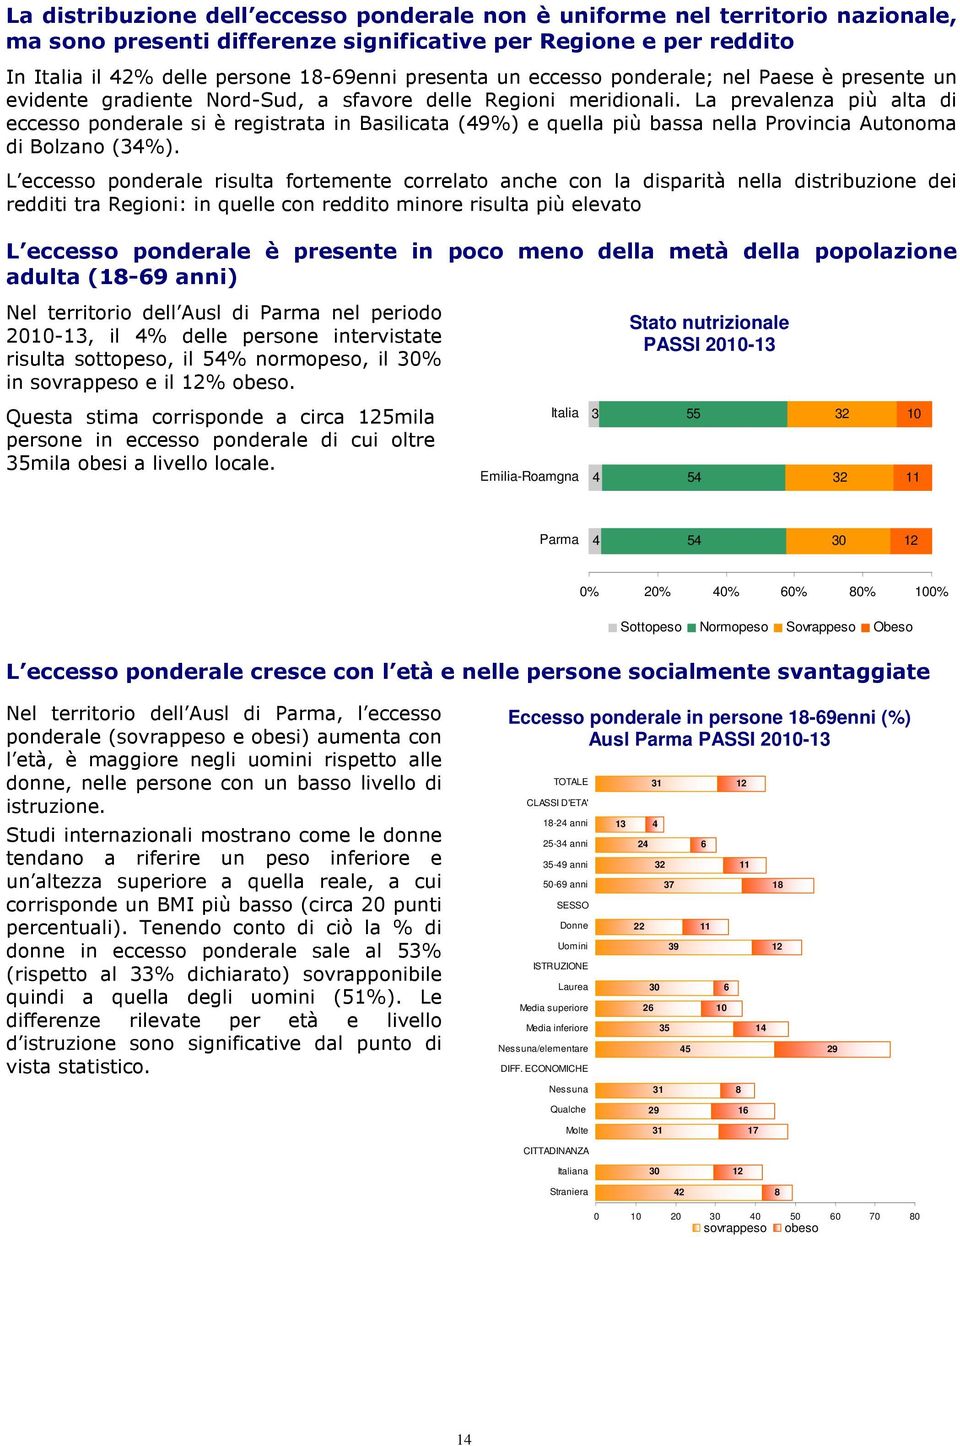 La prevalenza più alta di eccesso ponderale si è registrata in Basilicata (49%) e quella più bassa nella Provincia Autonoma di Bolzano (34%).